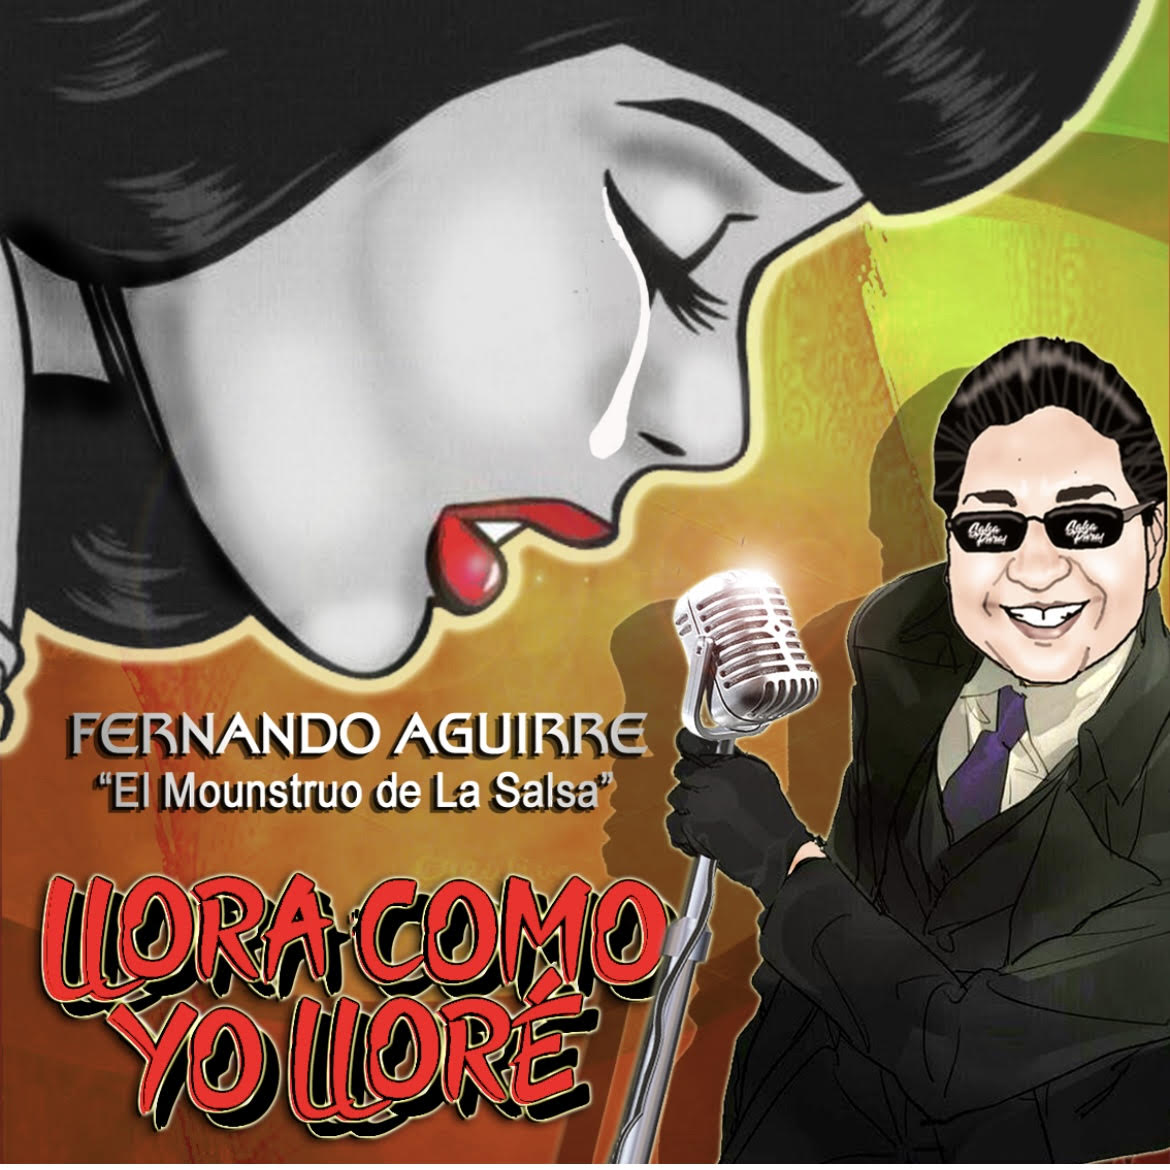 Llora como llore, Fernando Aguirre “El Monstruo de la salsa”